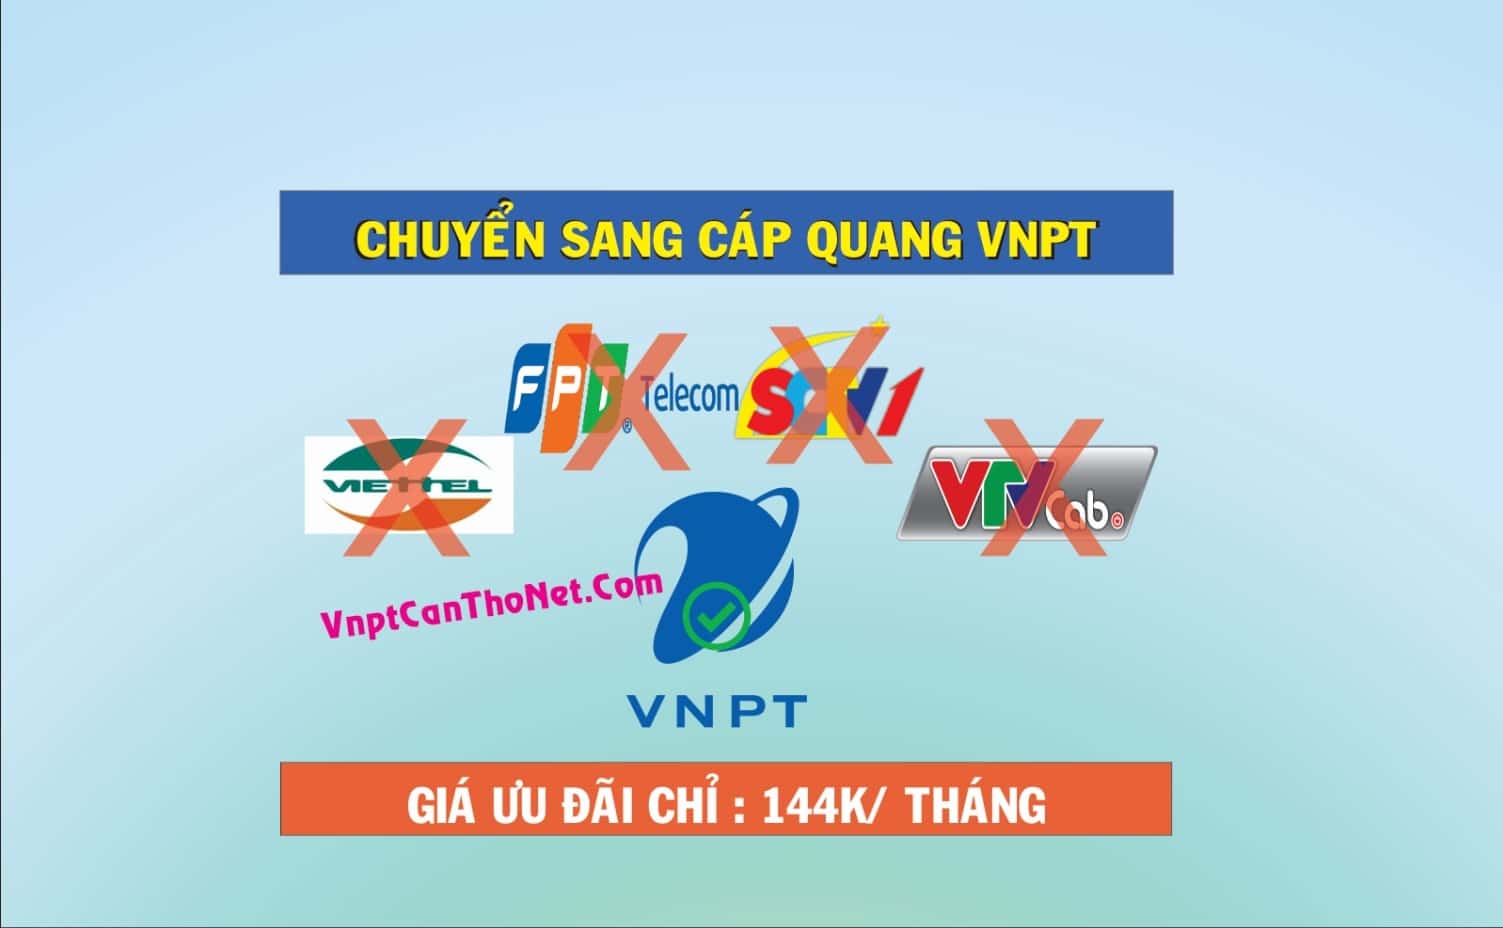 Ưu đãi Từ Viettel, FPT, SCTV chuyển sang mạng Internet Cáp Quang của VNPT tại Cần Thơ